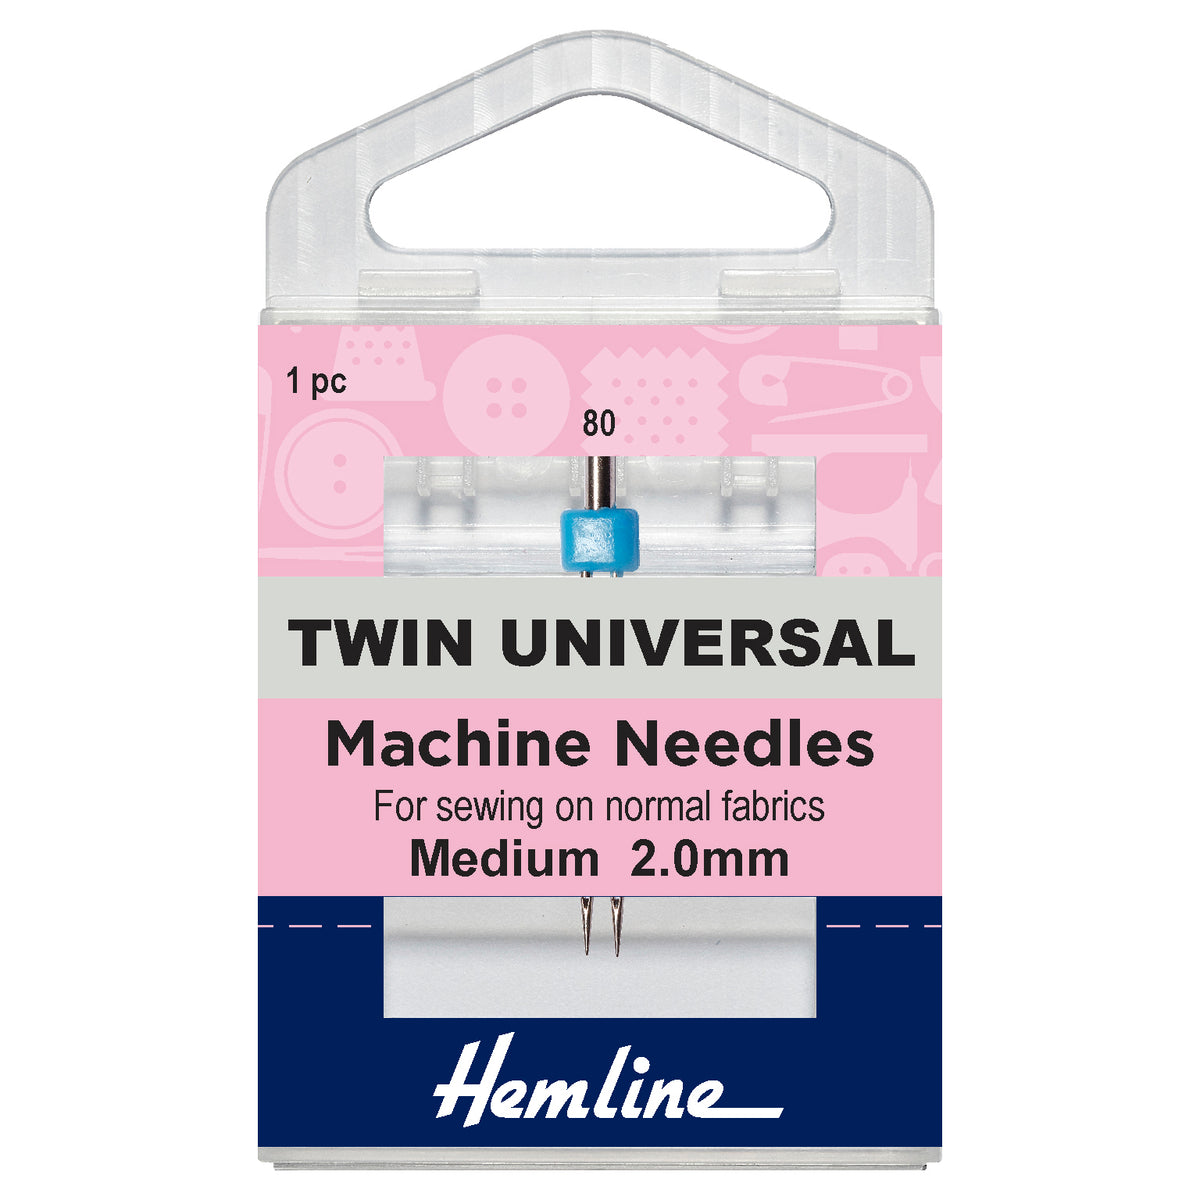 Sewing Machine Needles - TWIN UNIVERSAL